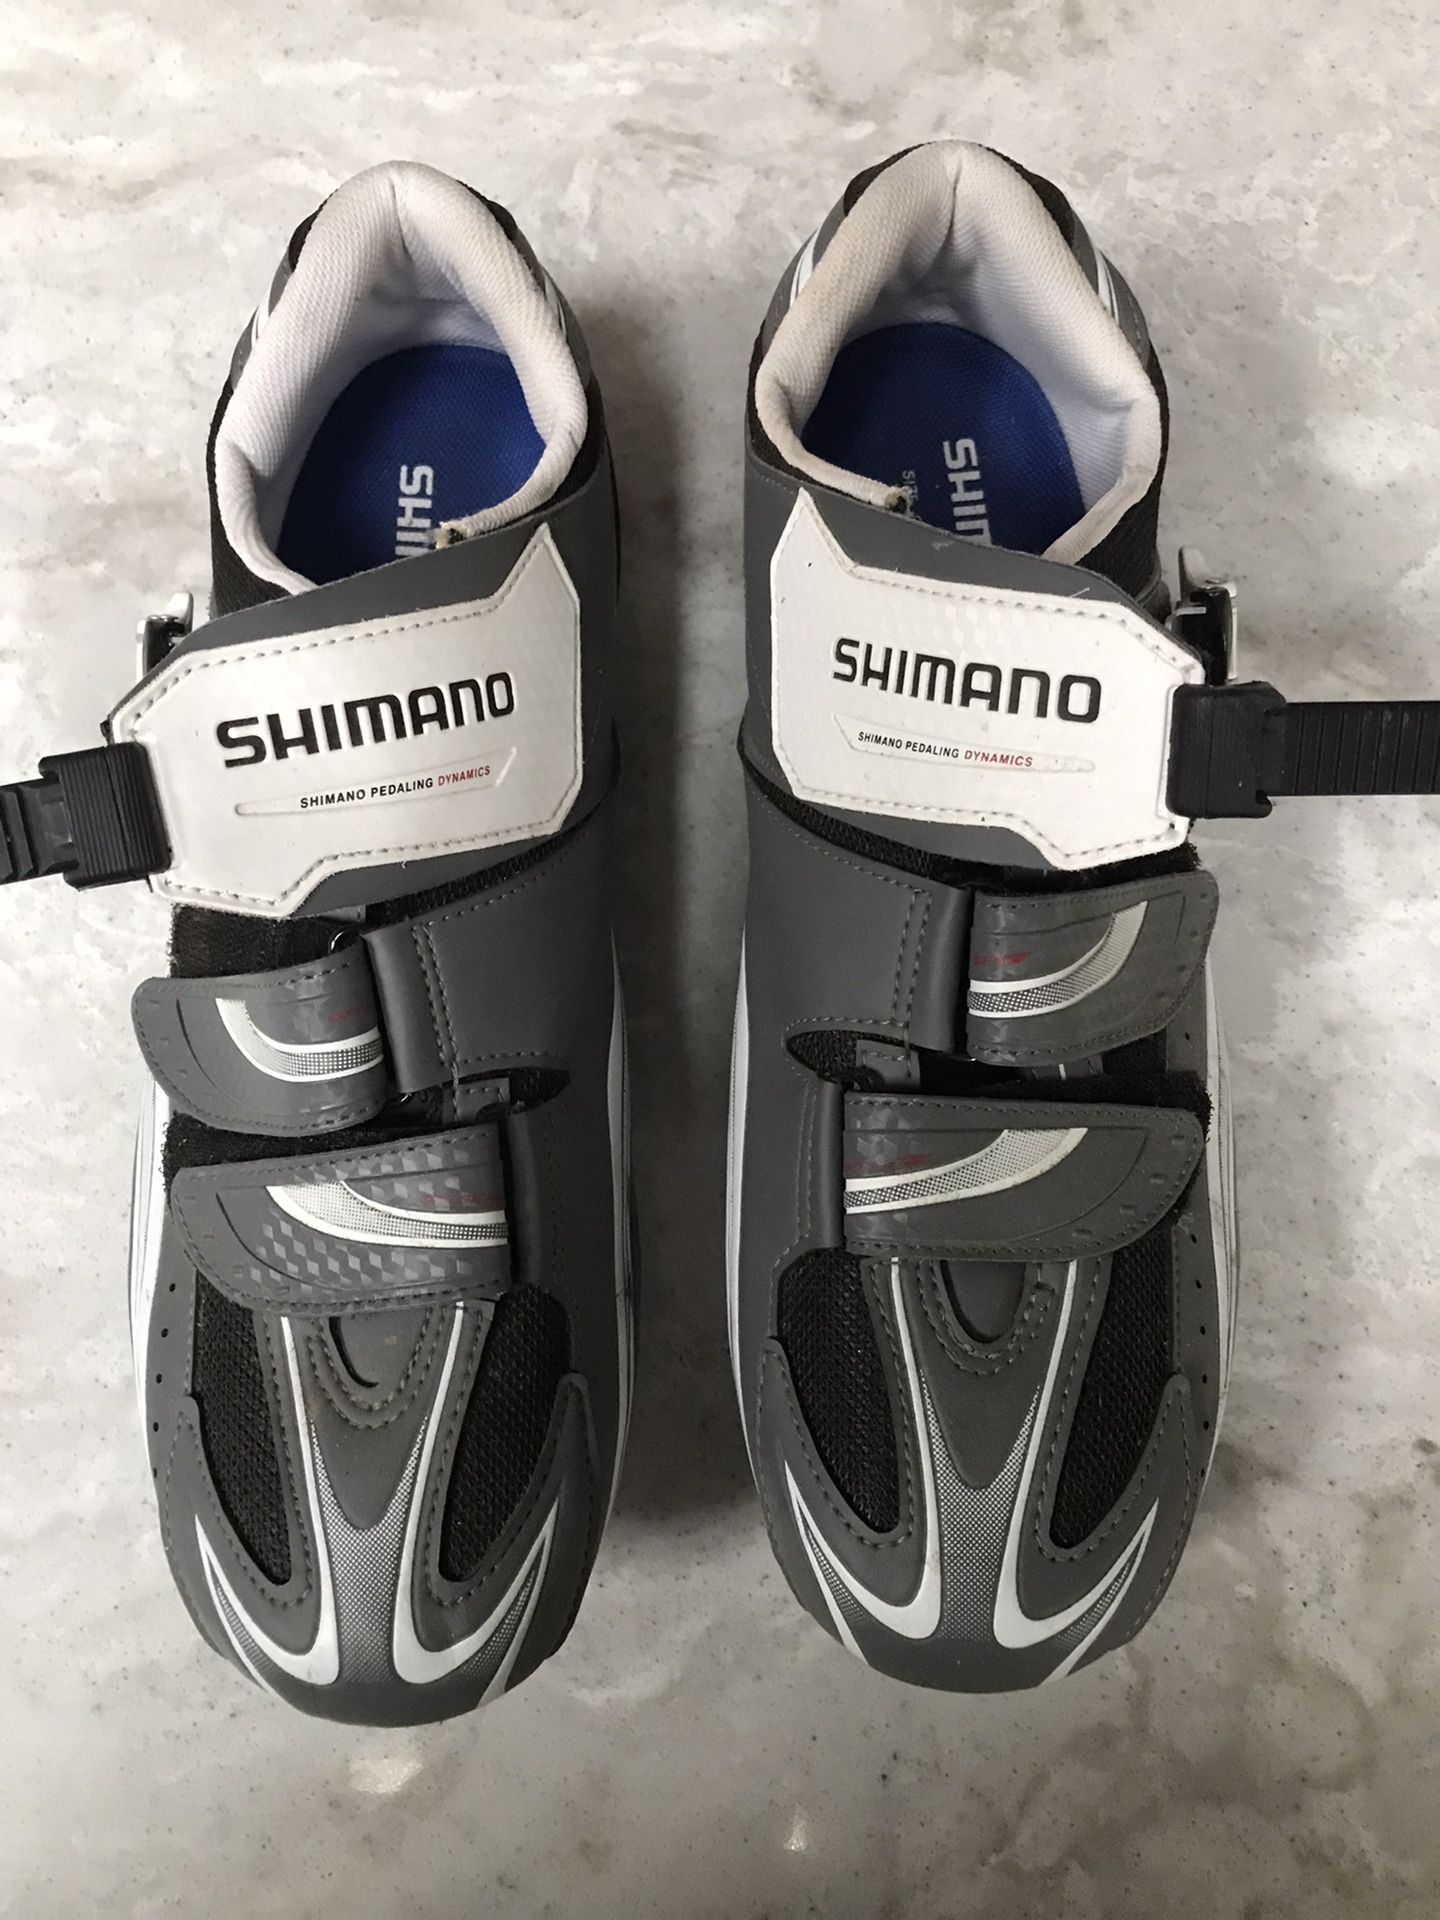 Shimano Cycling Shoes - Men’s 48 (big)